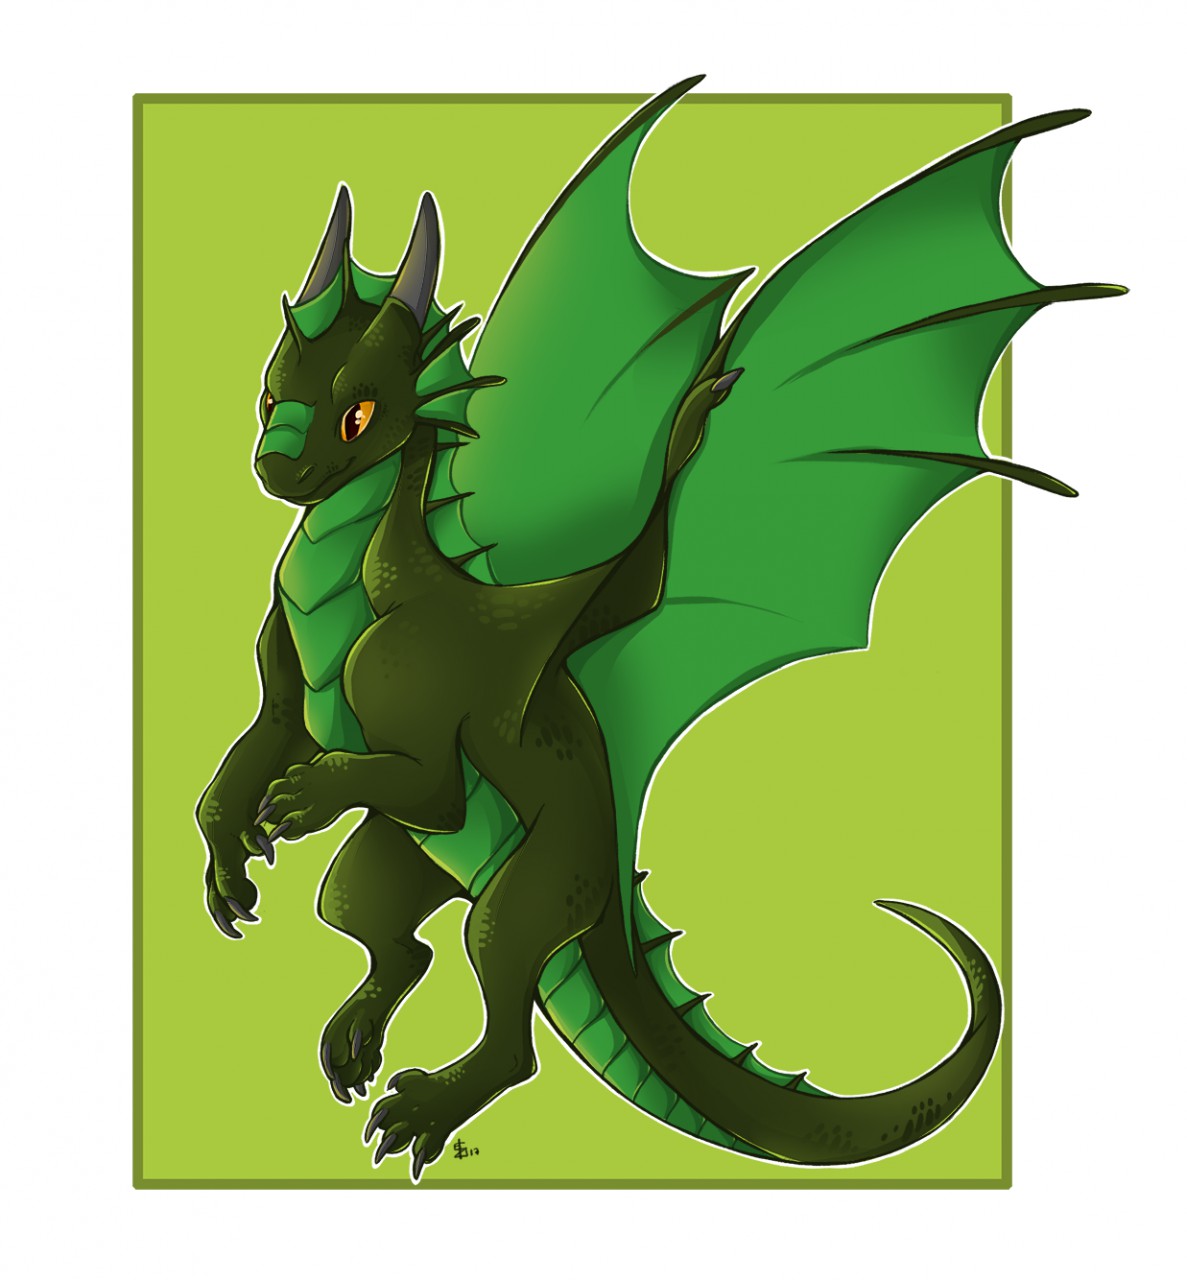 Chibi Dragon by silverdragon27 on DeviantArt